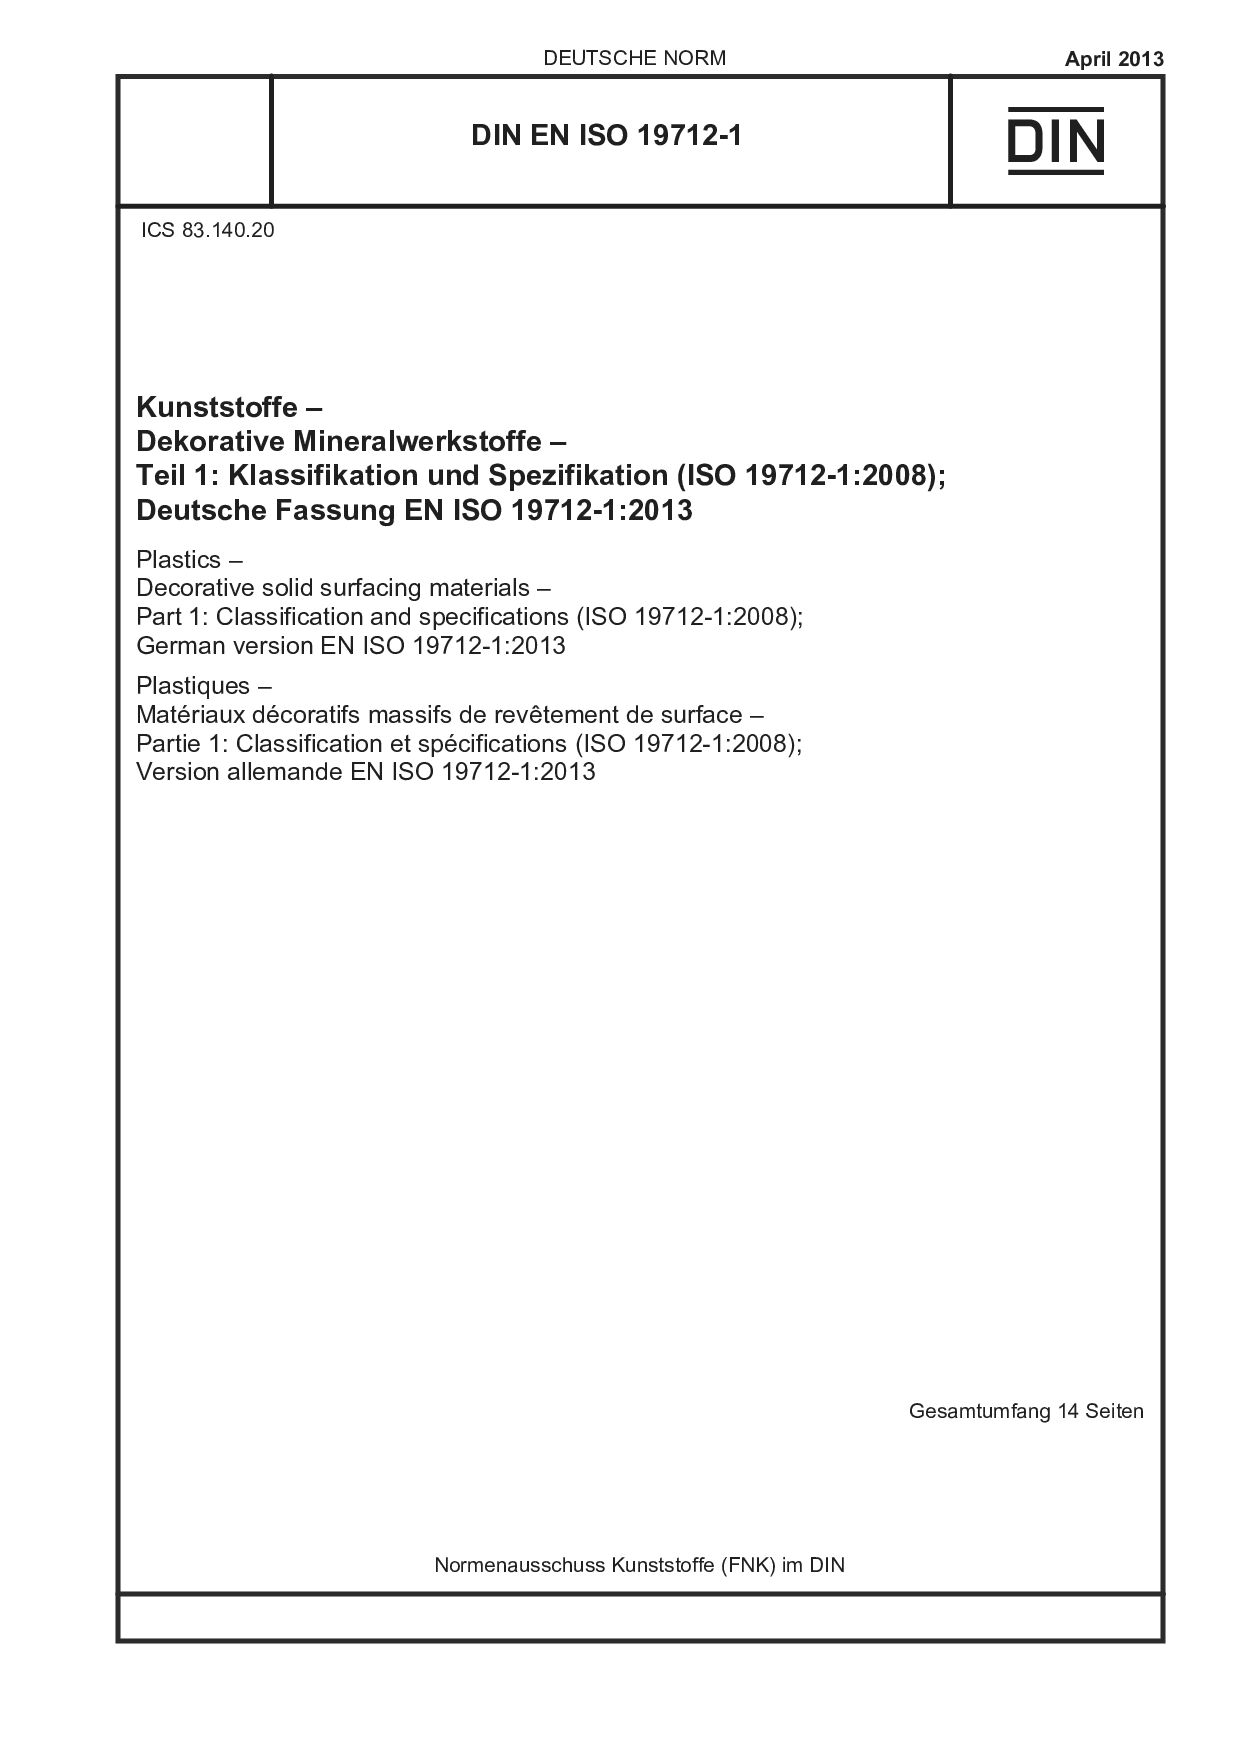 DIN EN ISO 19712-1:2013